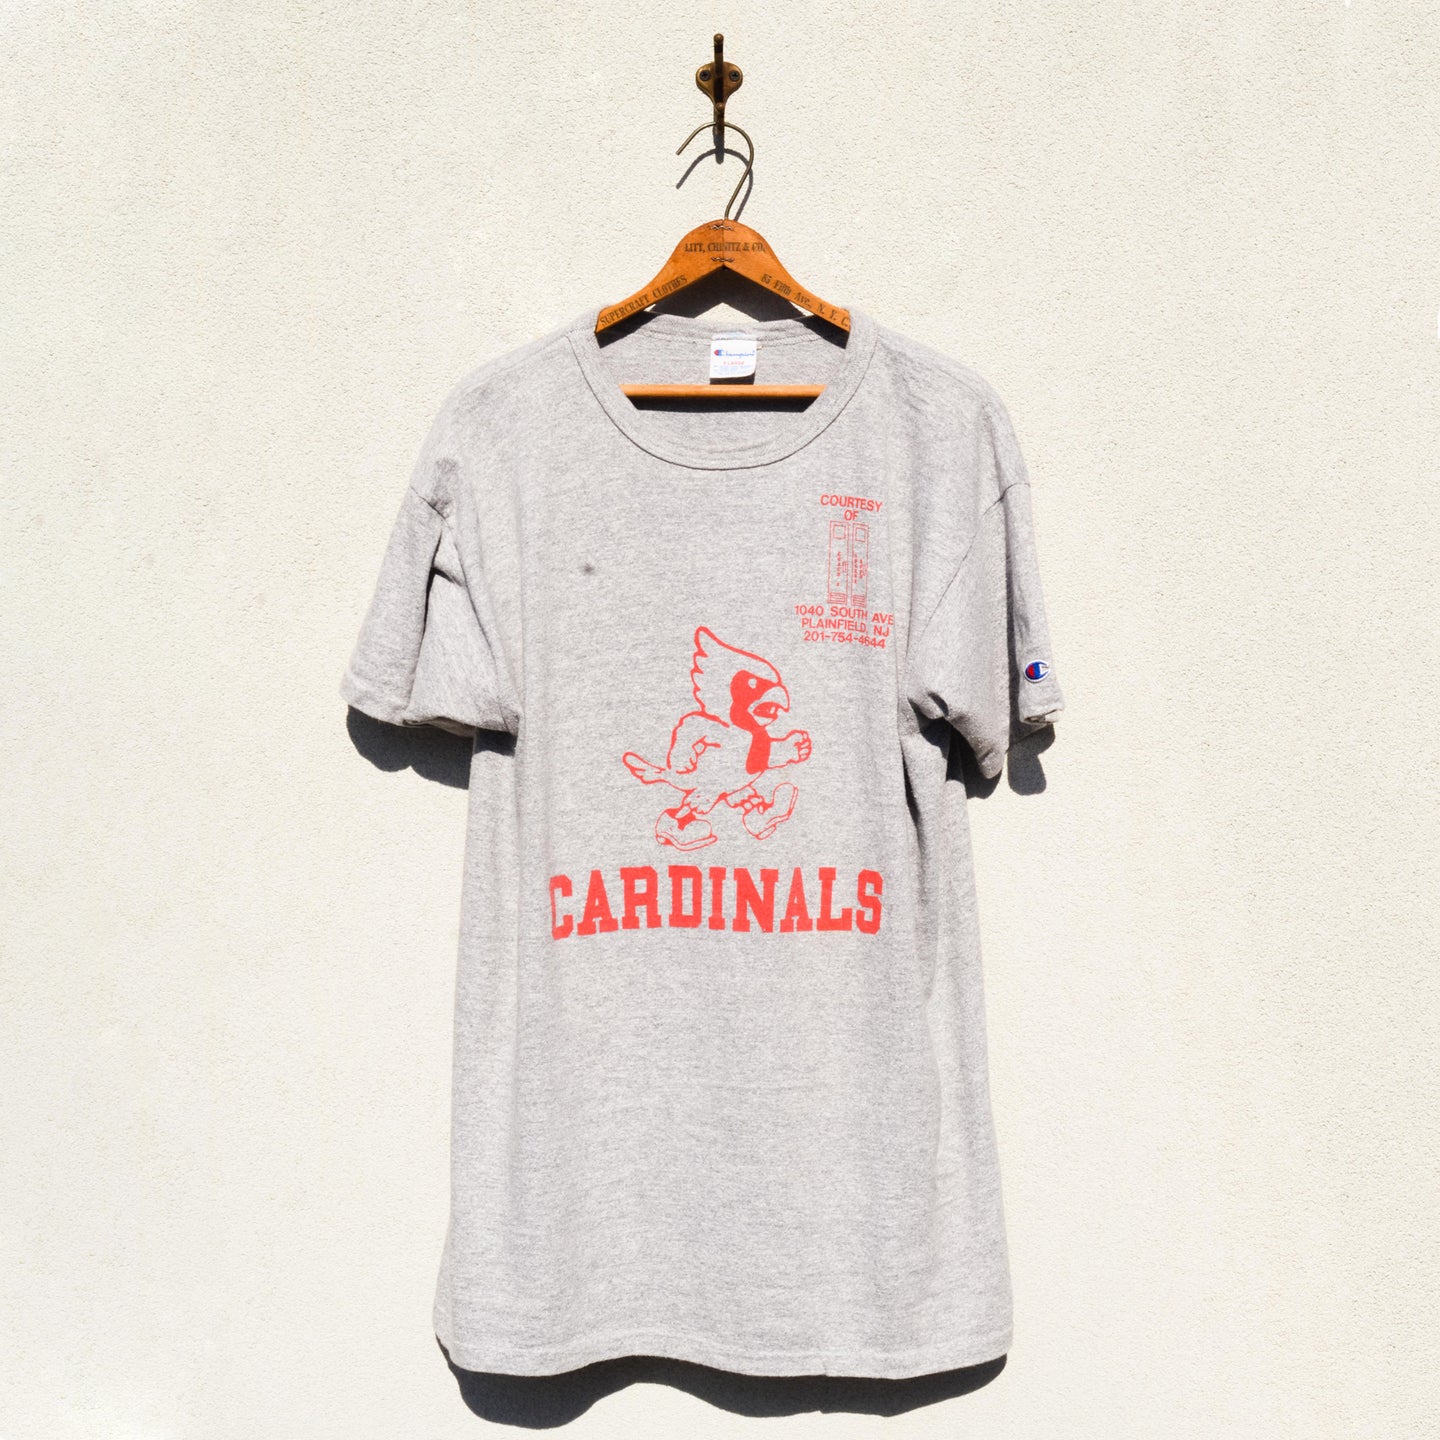 Champion - Cardinals Heather Grey Tee Shirt